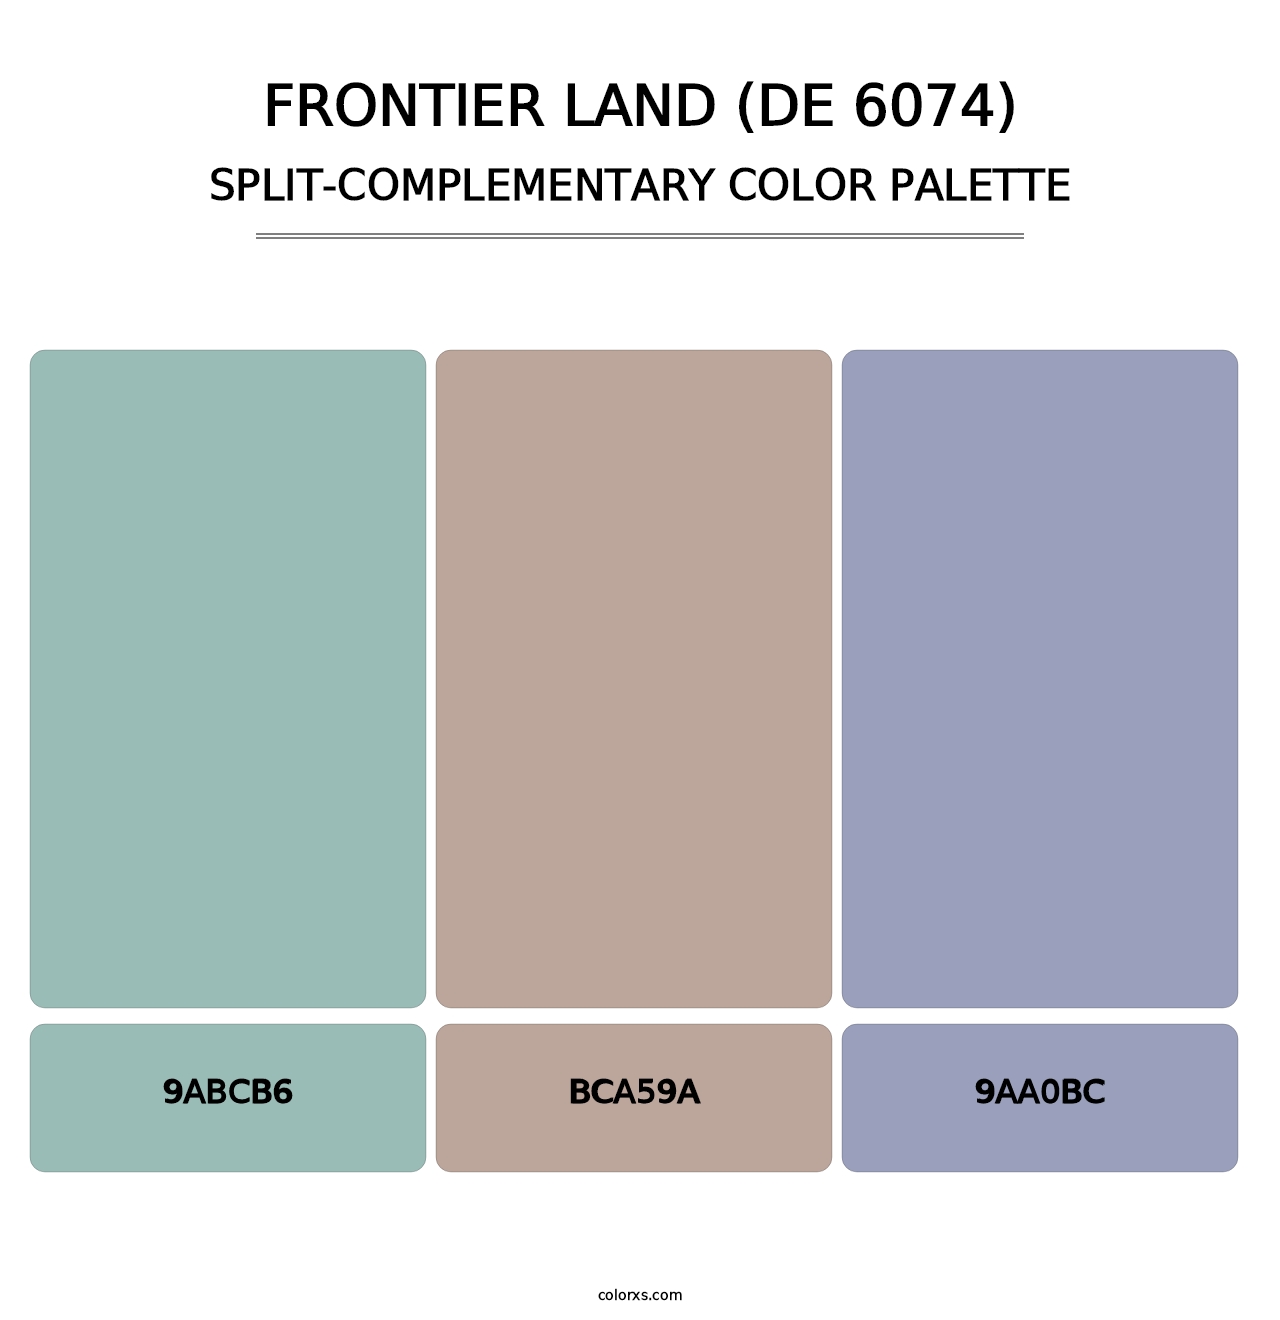 Frontier Land (DE 6074) - Split-Complementary Color Palette